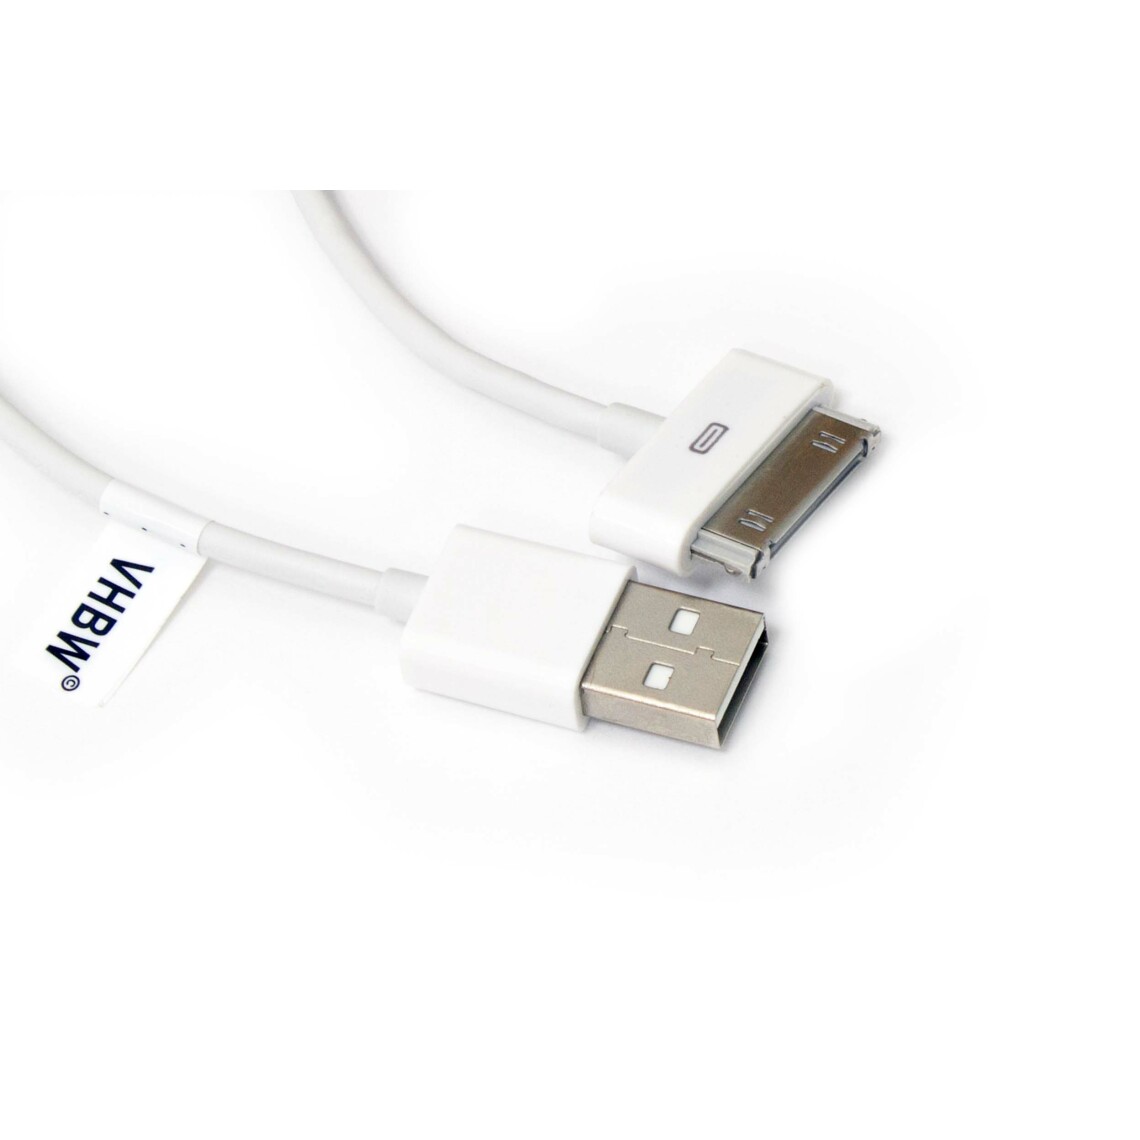 Vhbw - vhbw câble de données USB (type A sur iPod) compatible avec Apple iPod 5.5 Gen. (Video) - A1136 - 30Gb lecteur MP3 - blanc - Alimentation modulaire